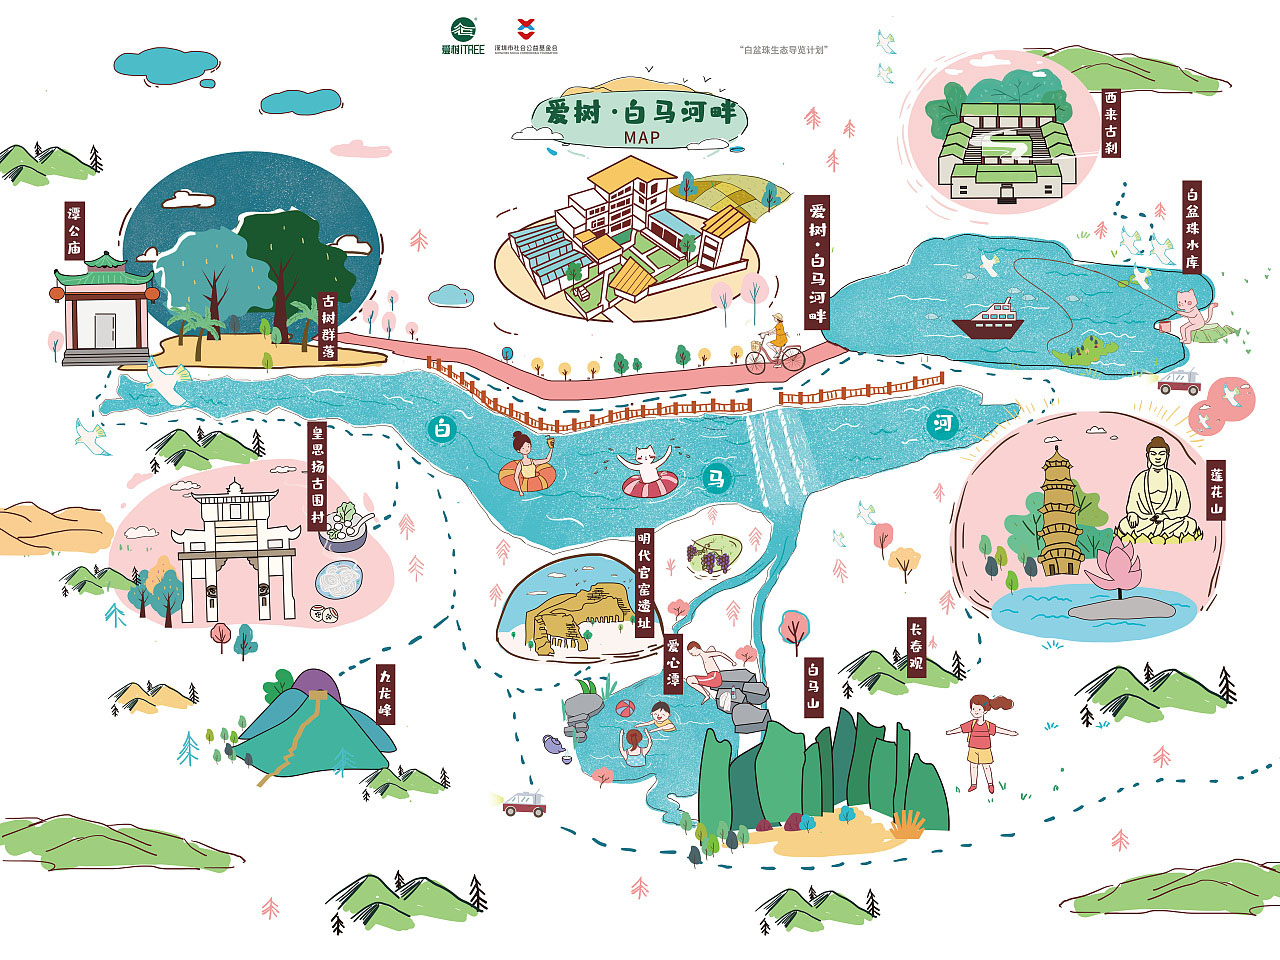 江州语音导览让景区游览更加智能